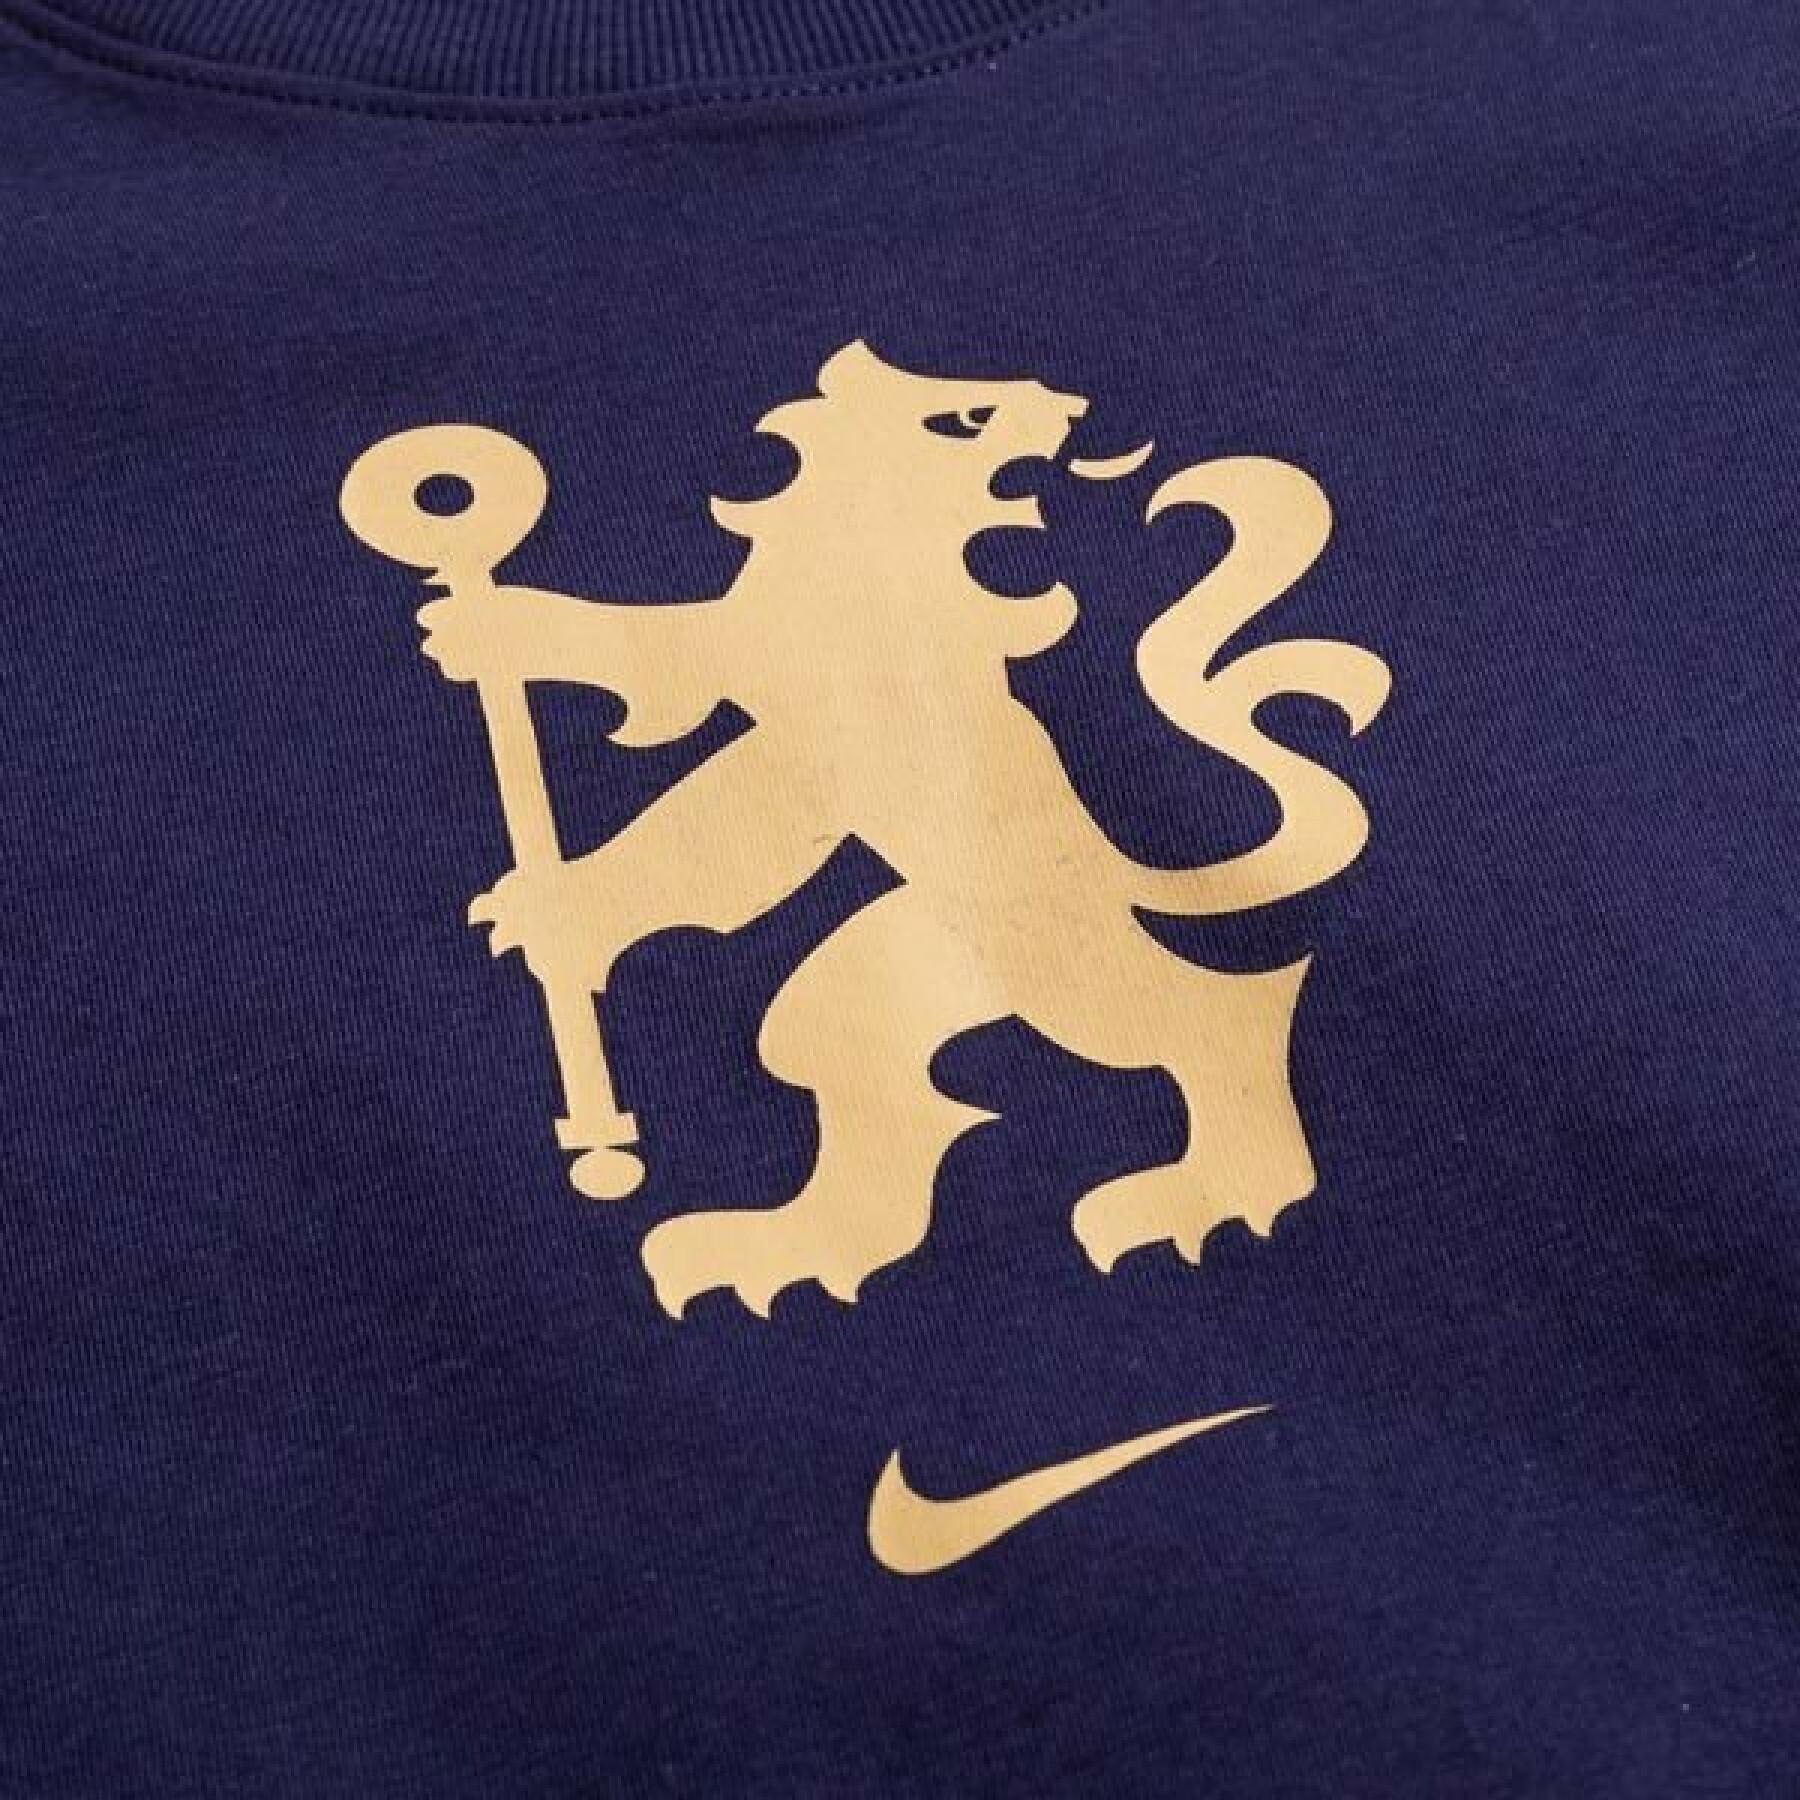 Kinder-T-shirt Chelsea 2021/22